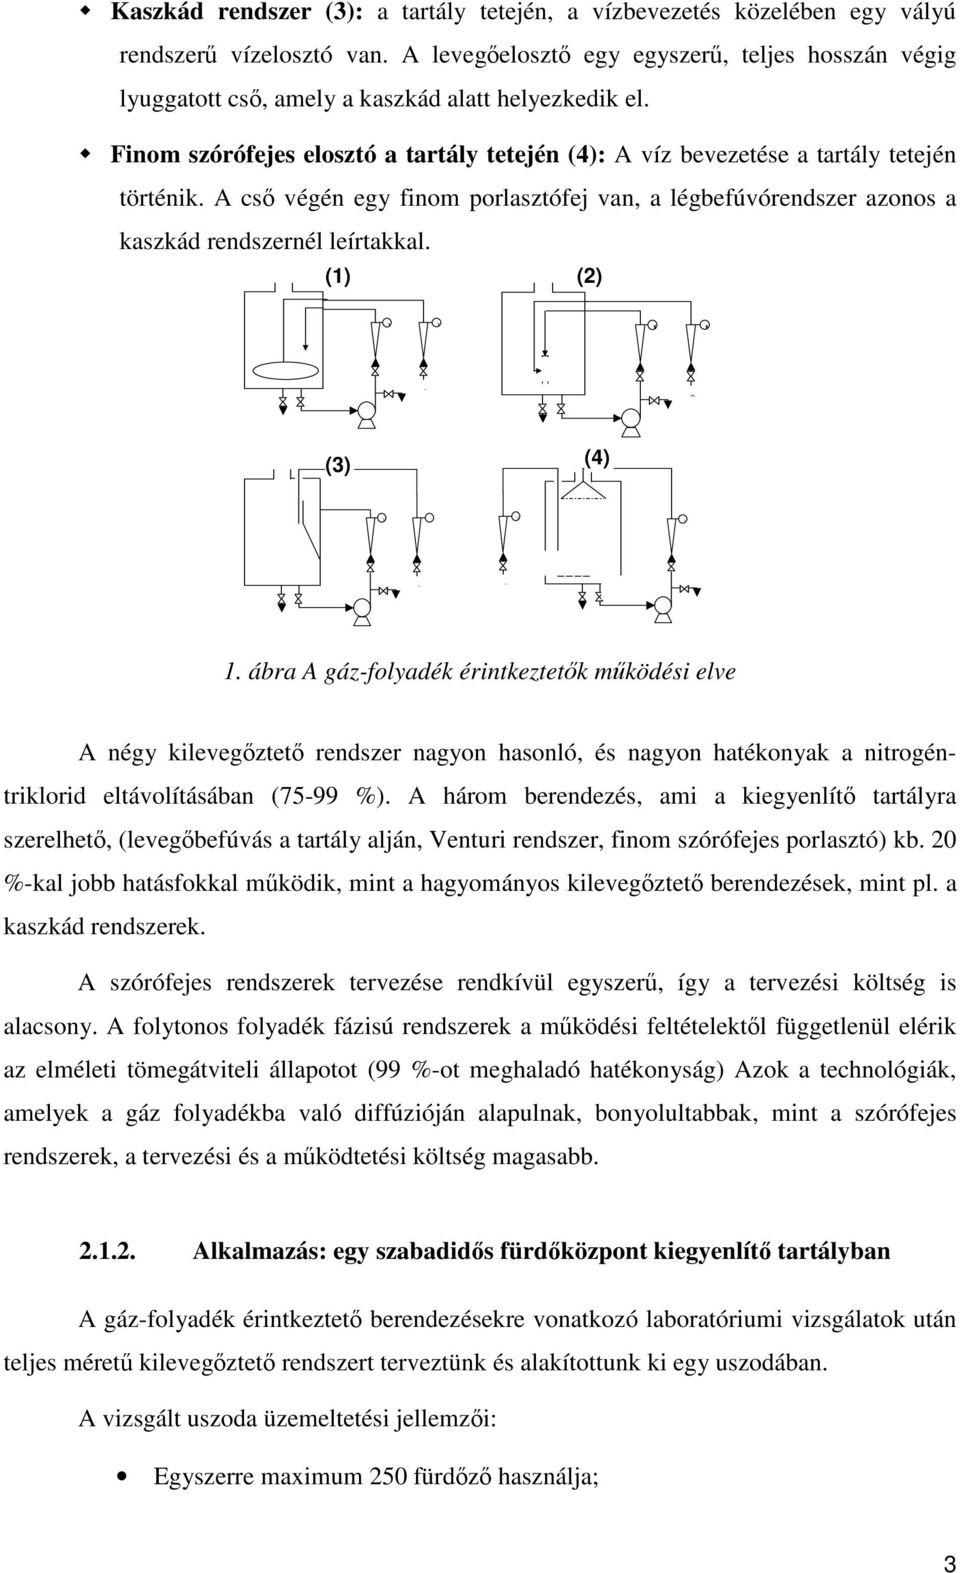 A nitrogén-triklorid kilevegzésének hatása a fedett uszodák vízminségére -  PDF Free Download